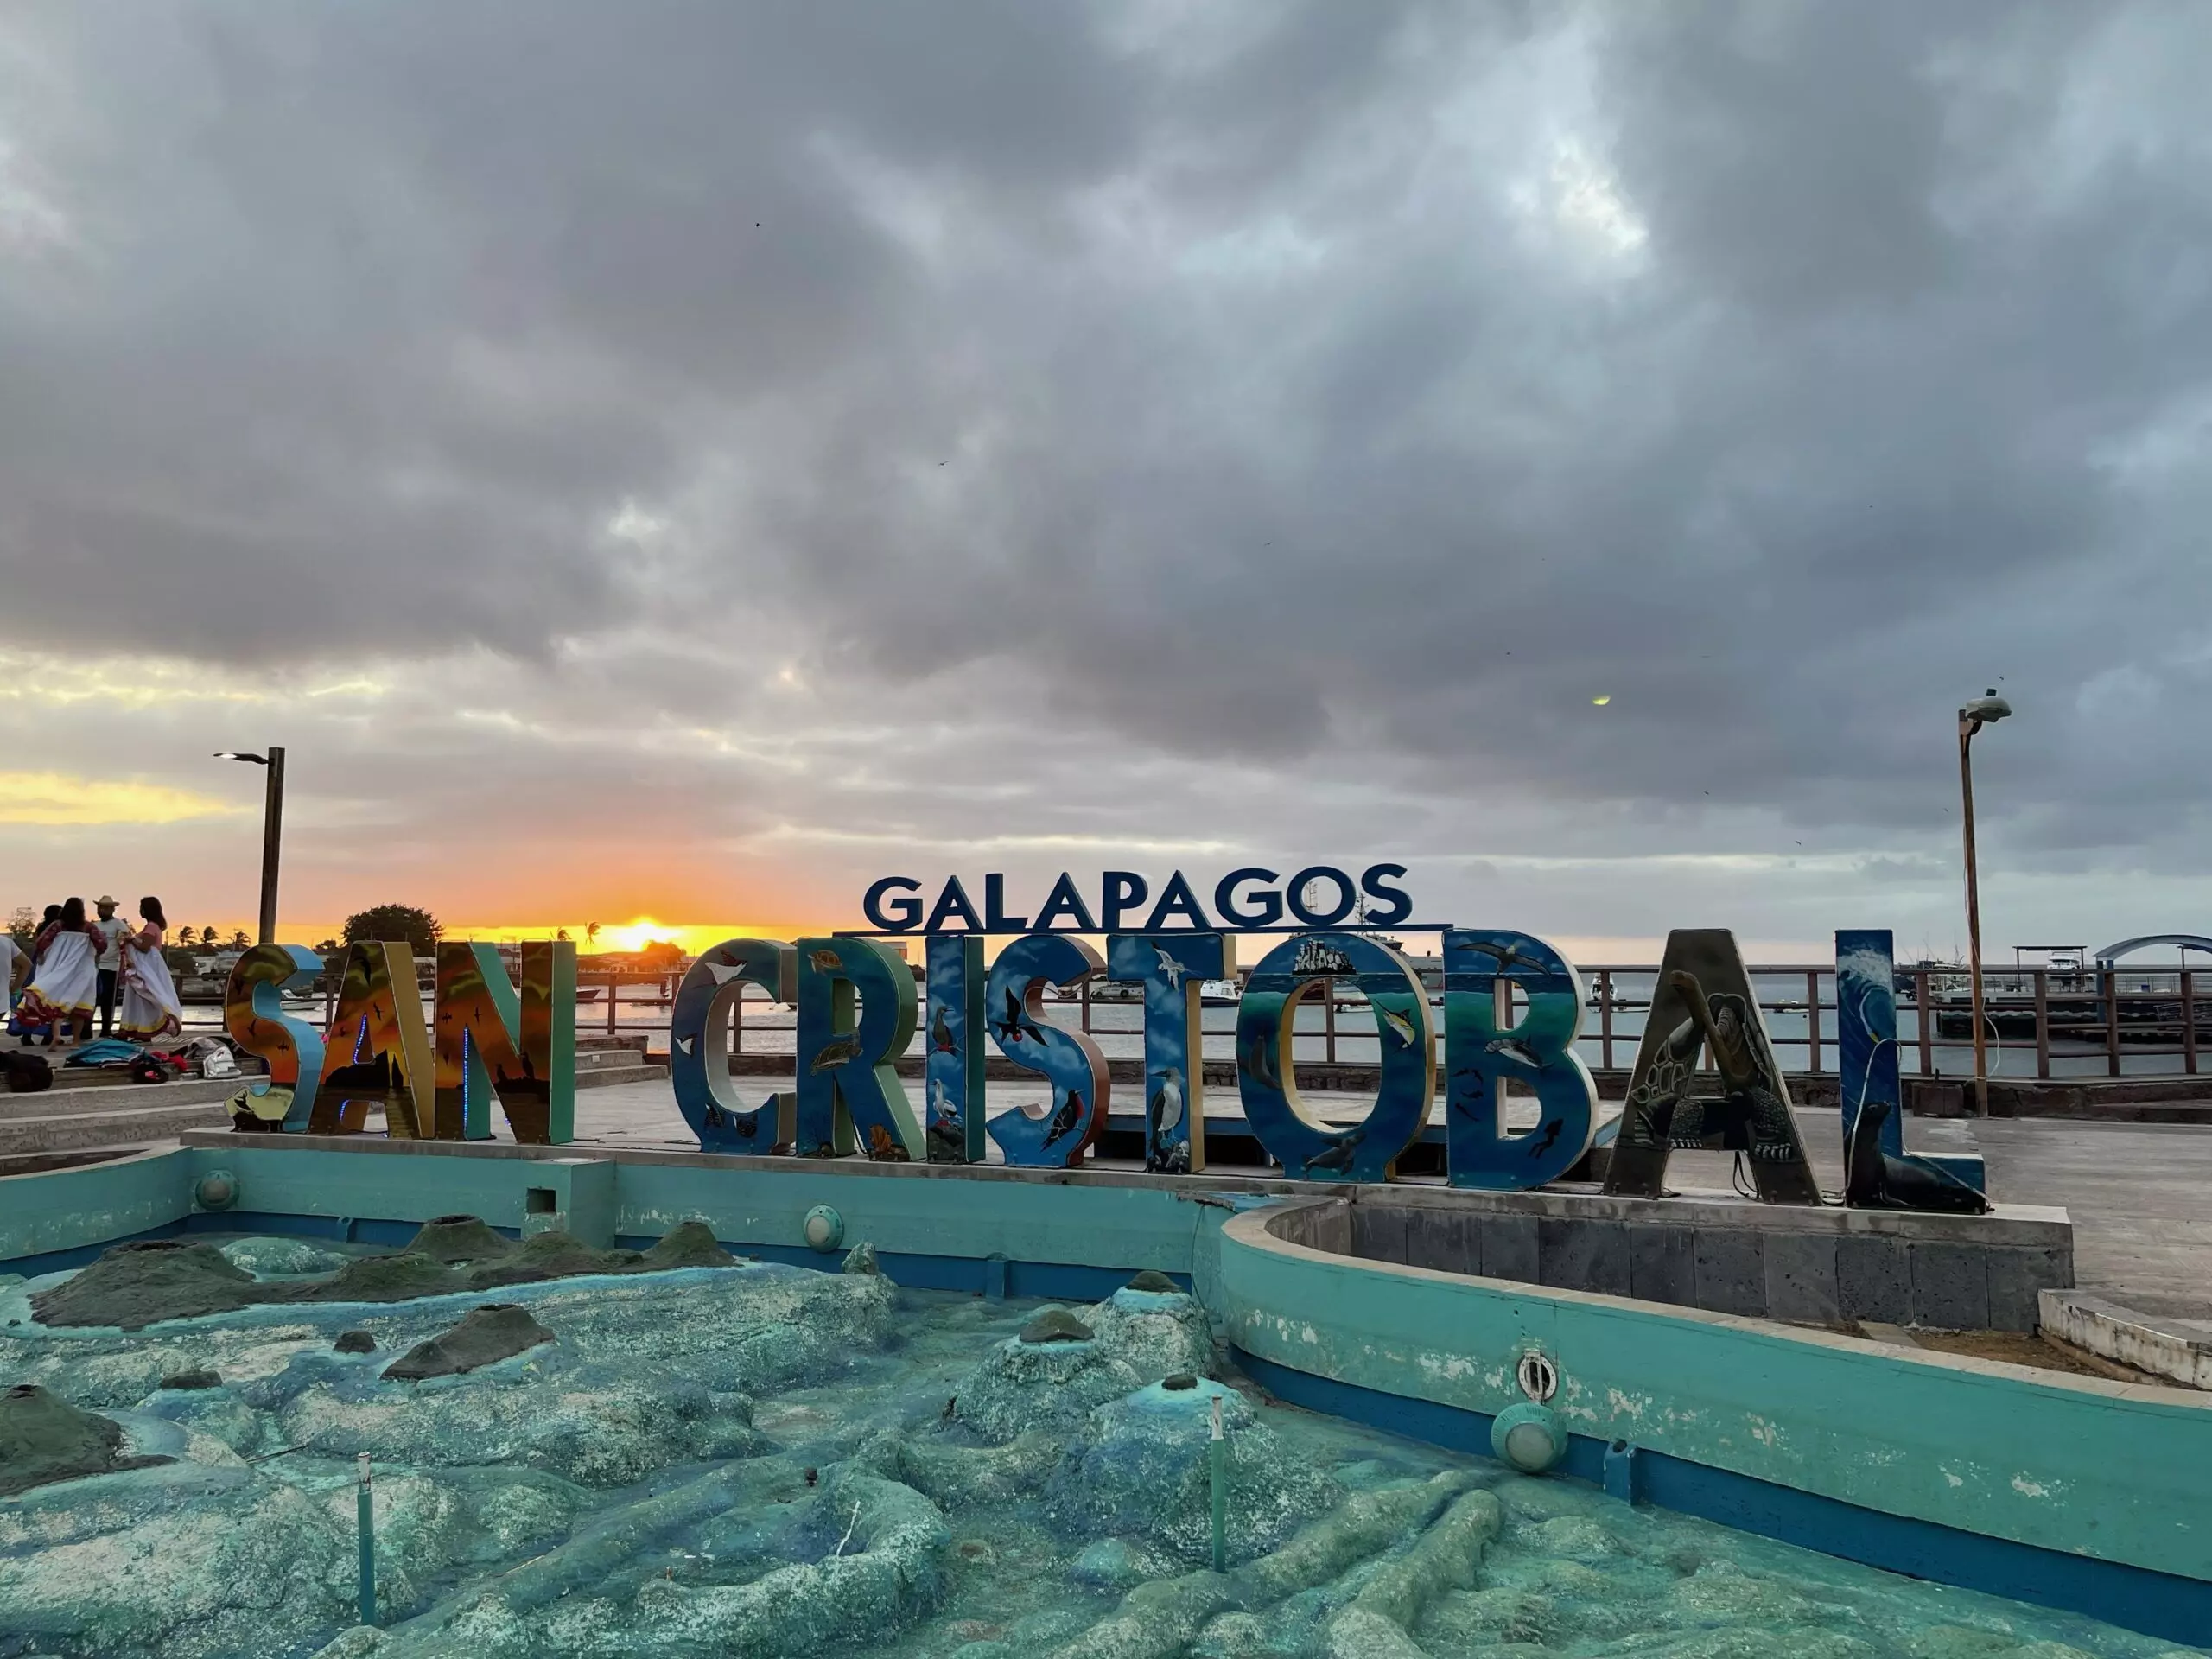 Galapagos sign